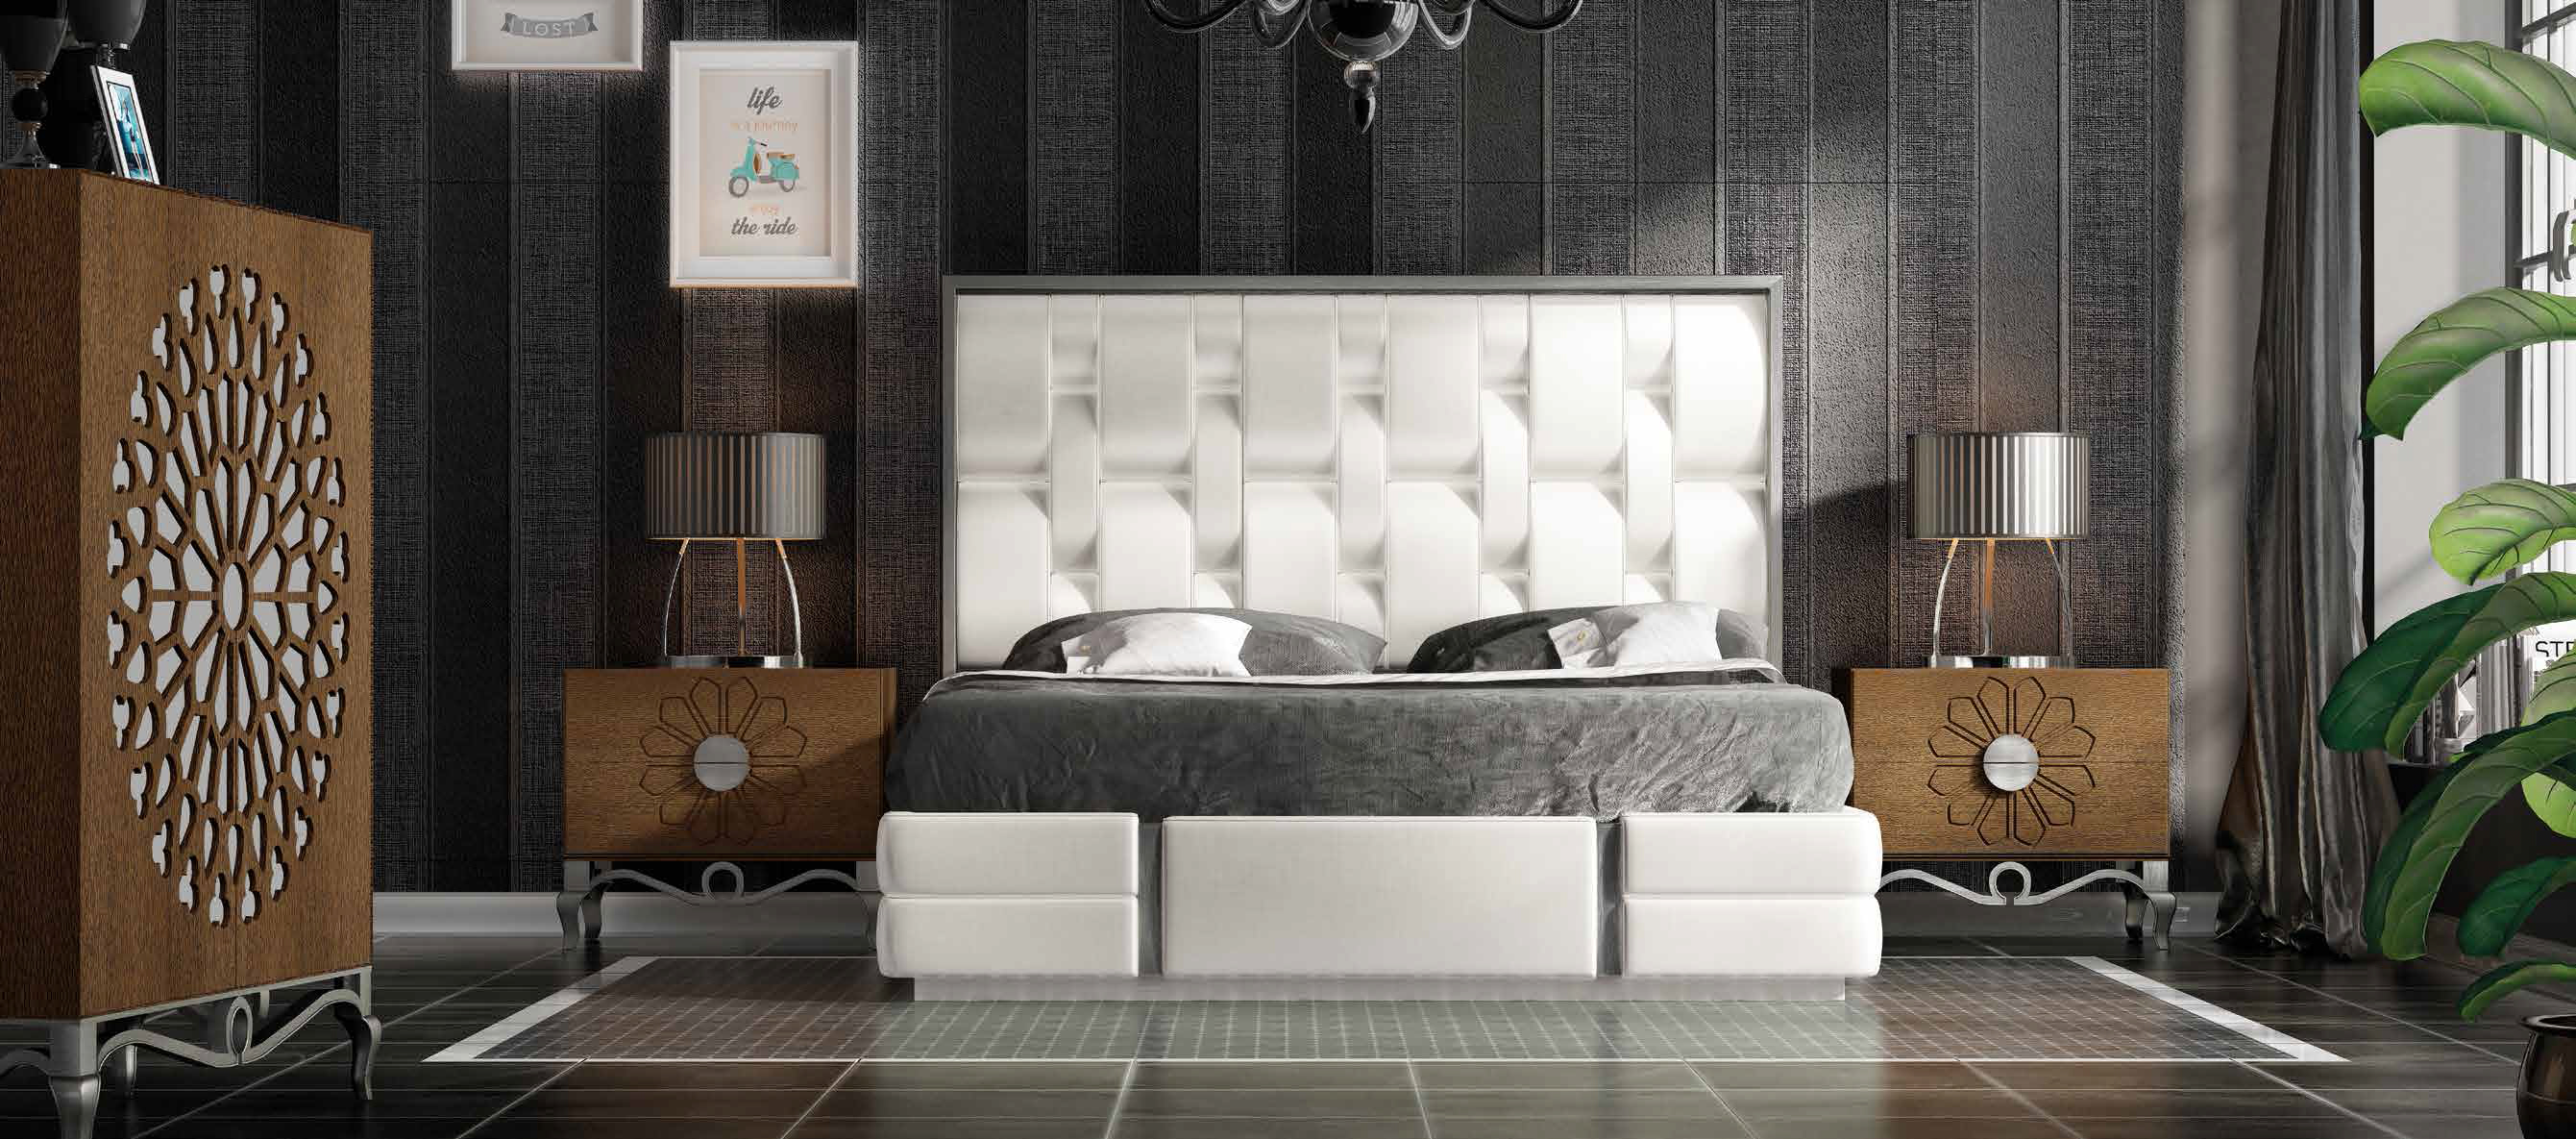 Bedroom Furniture Beds DOR 57